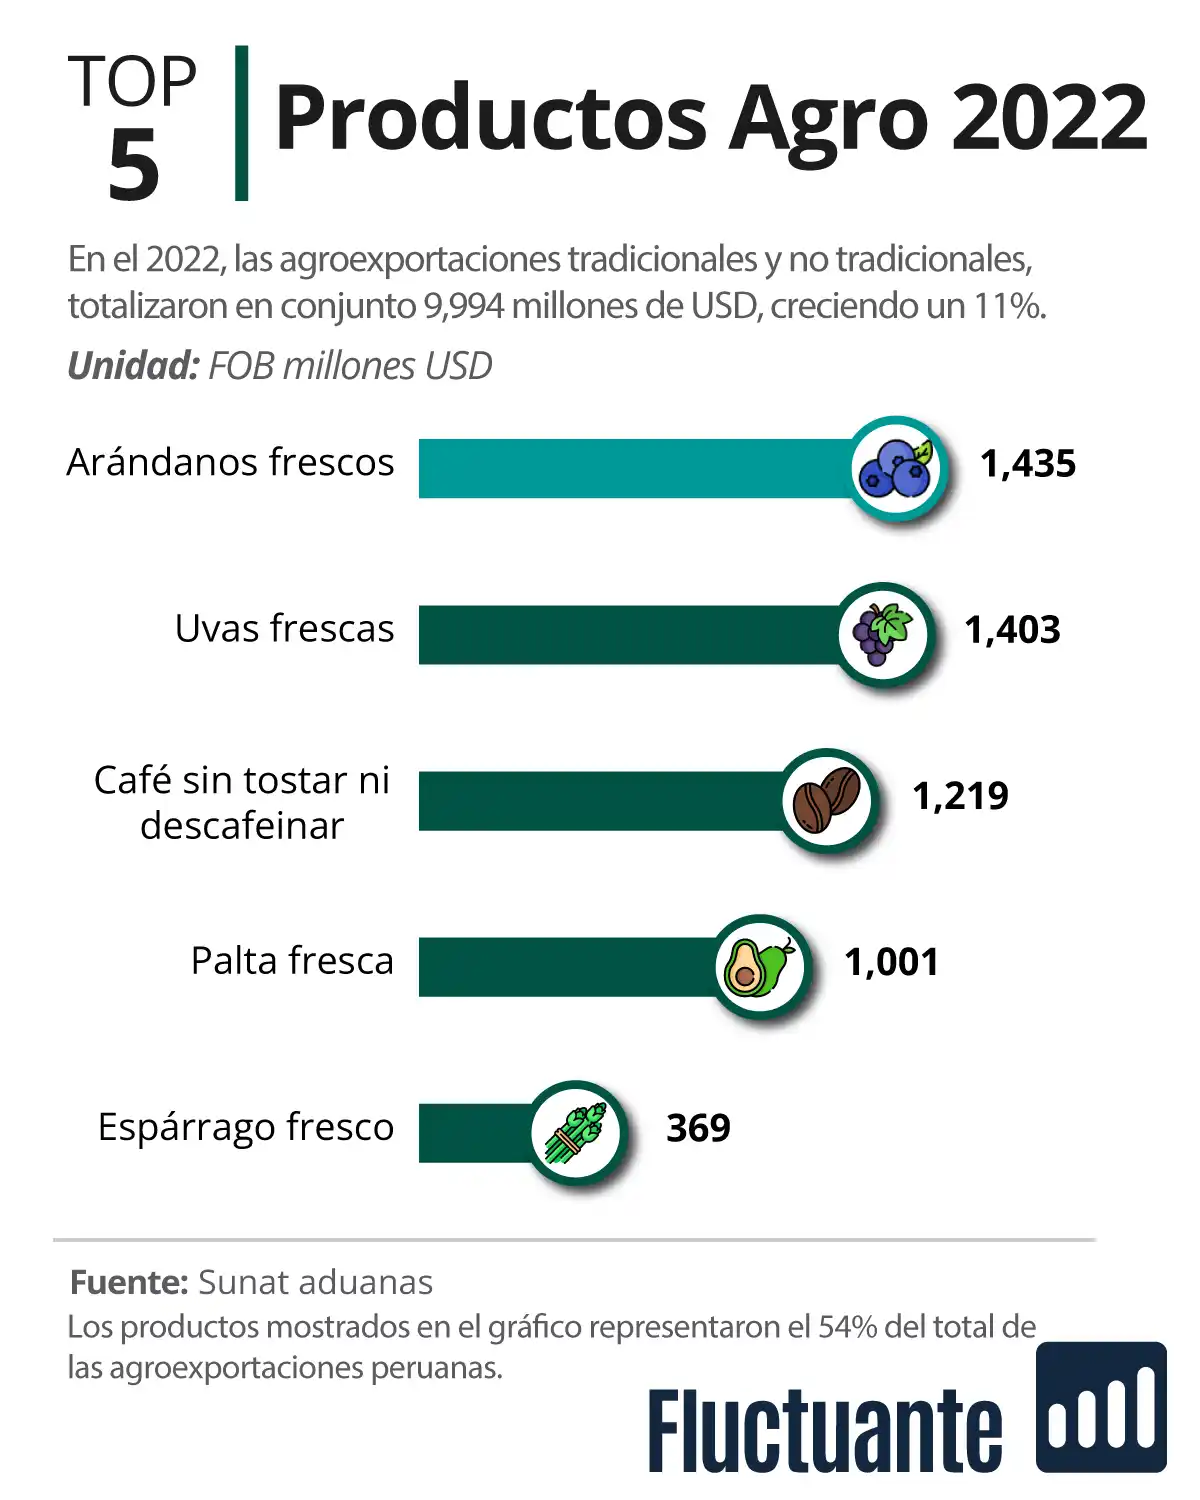 Top 5 Productos de las agroexportaciones 2022